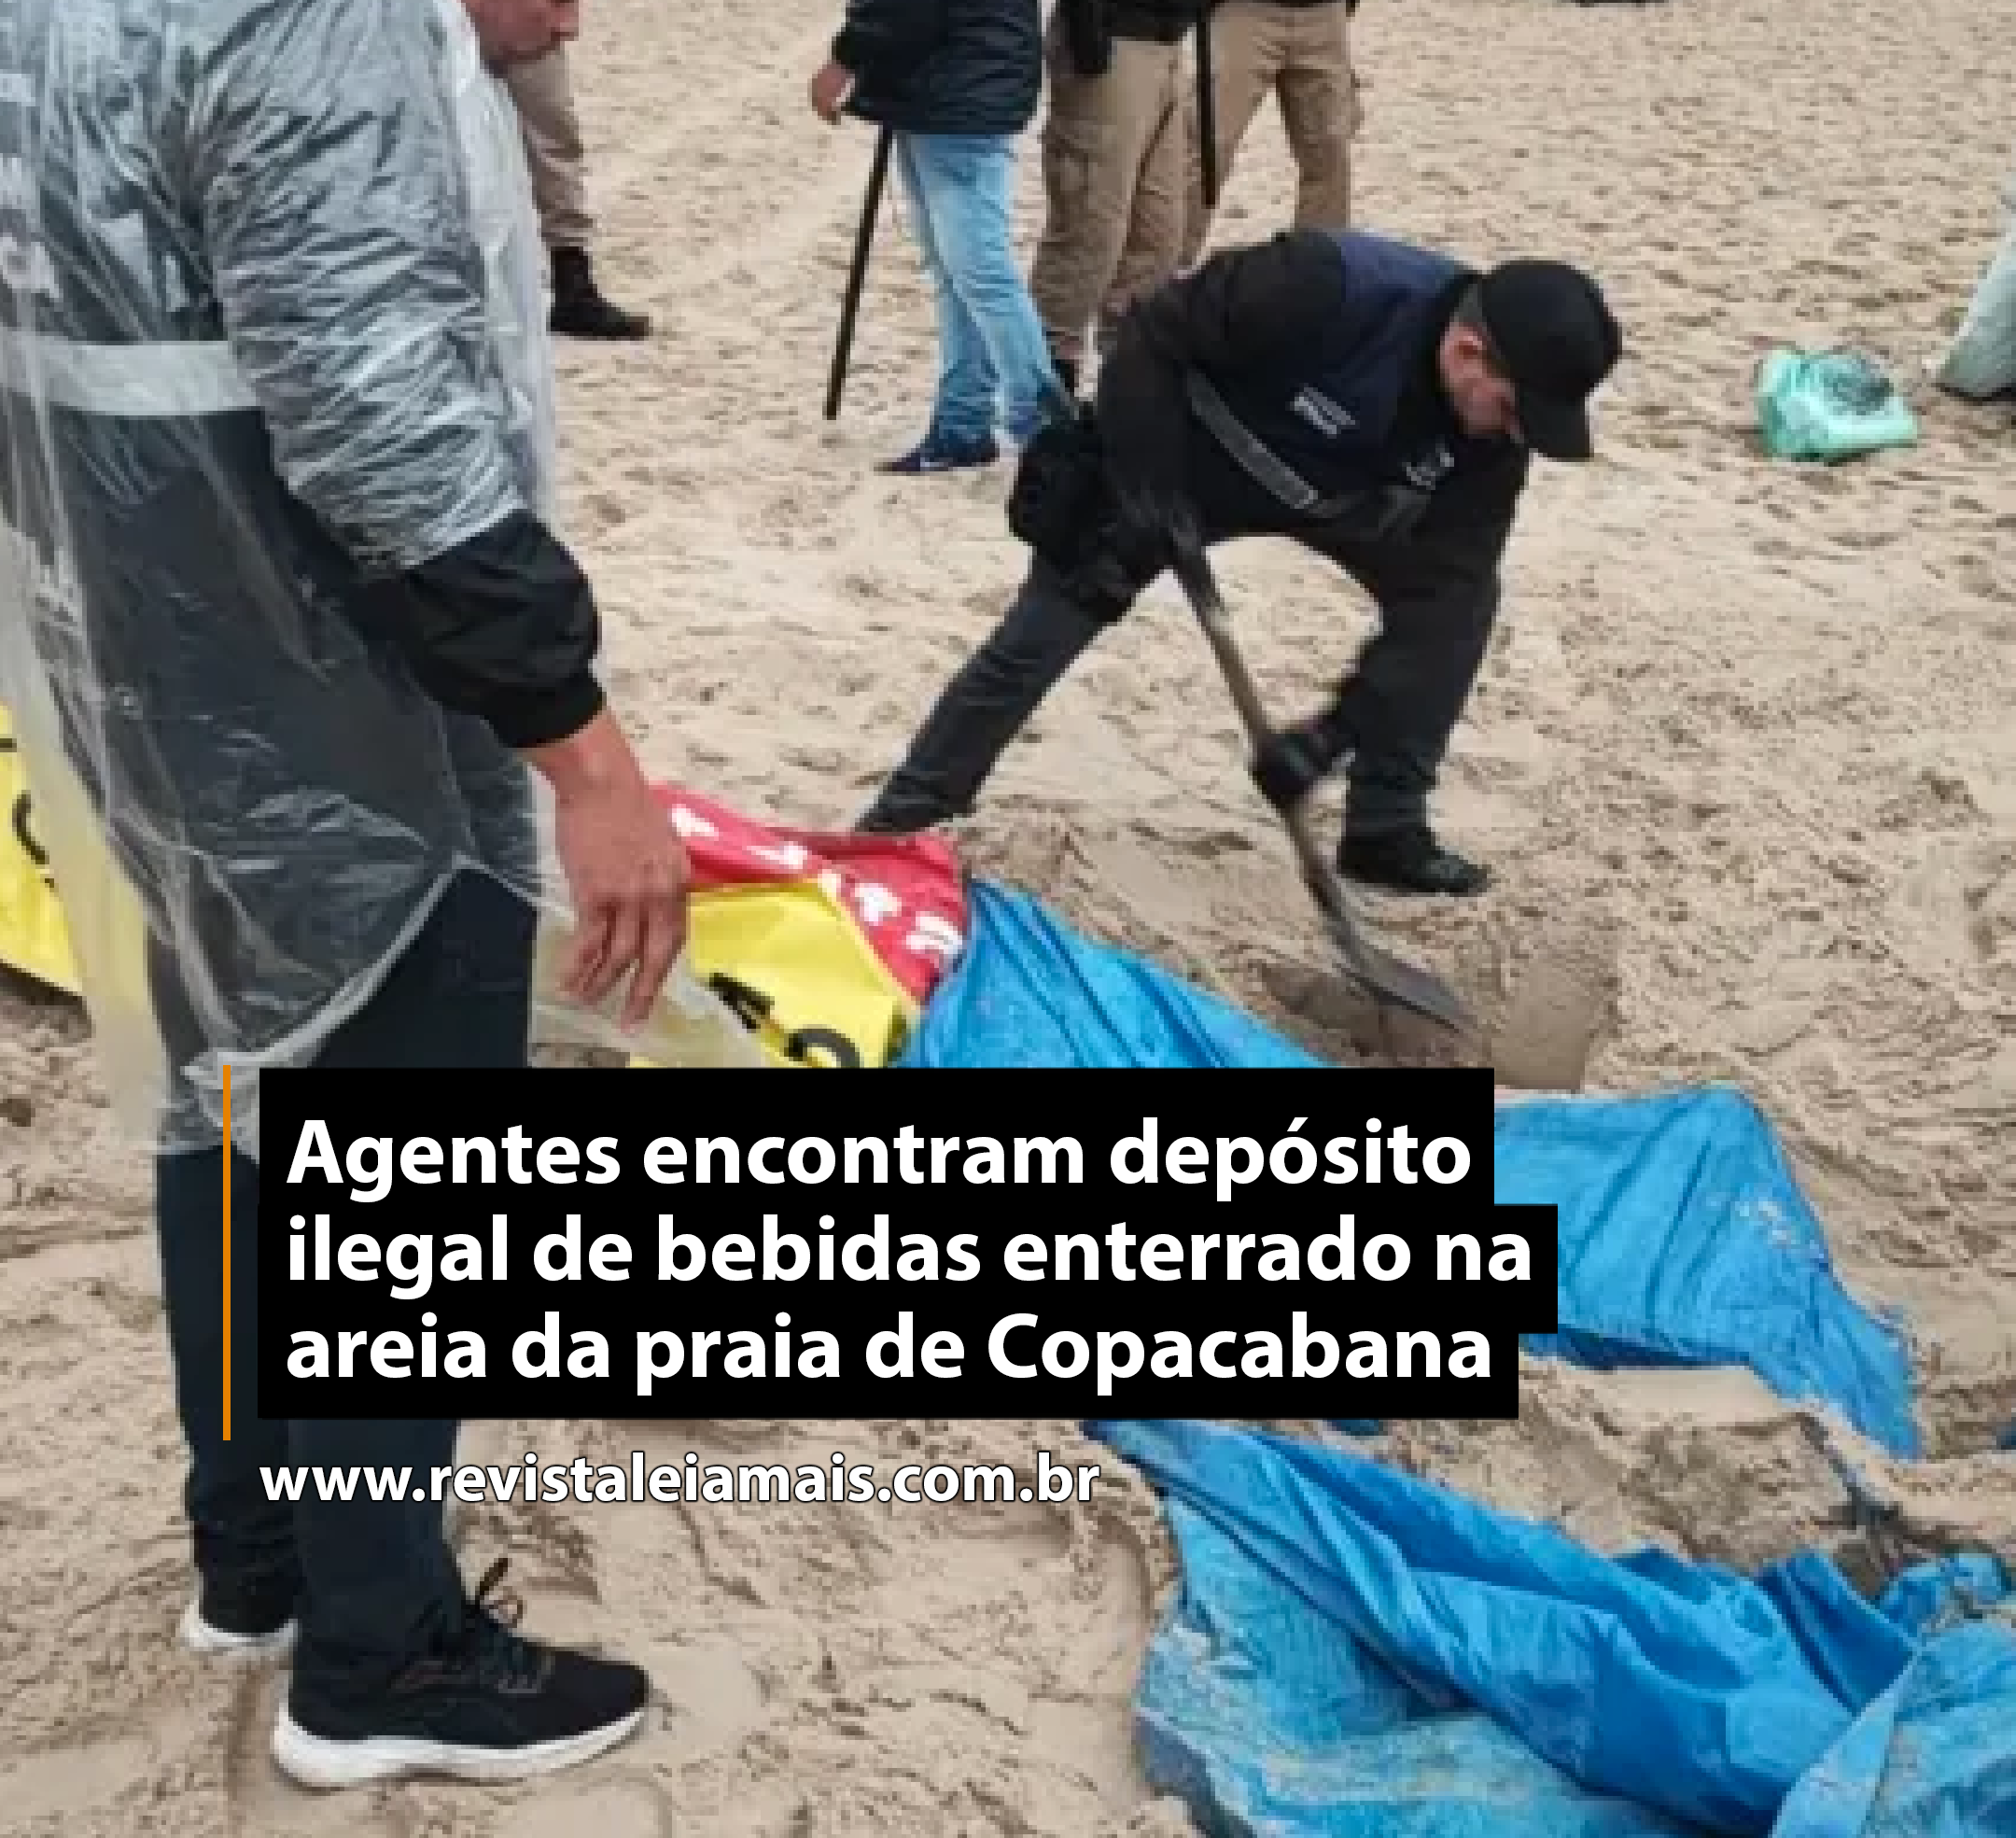 Agentes encontram depósito ilegal de bebidas enterrado na areia da praia de Copacabana